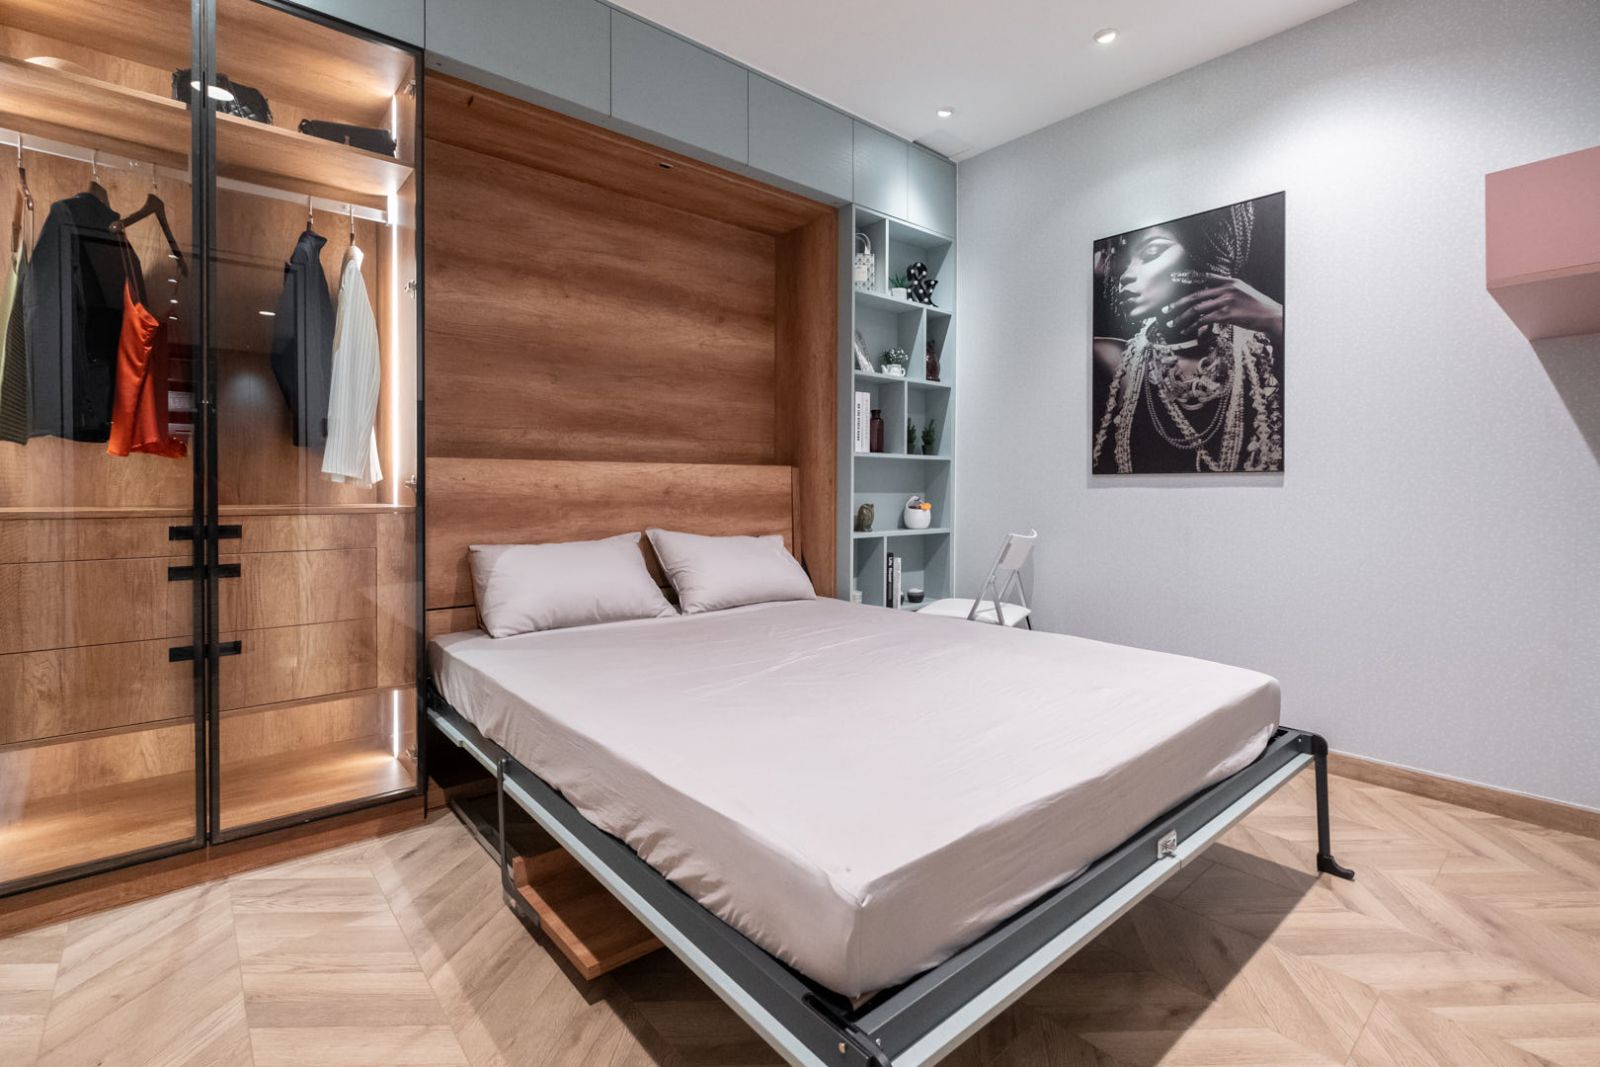 09 Mẫu thiết kế phòng ngủ 16 m2 bạn có thể ứng dụng phụ kiện giường nâng hạ thông minh